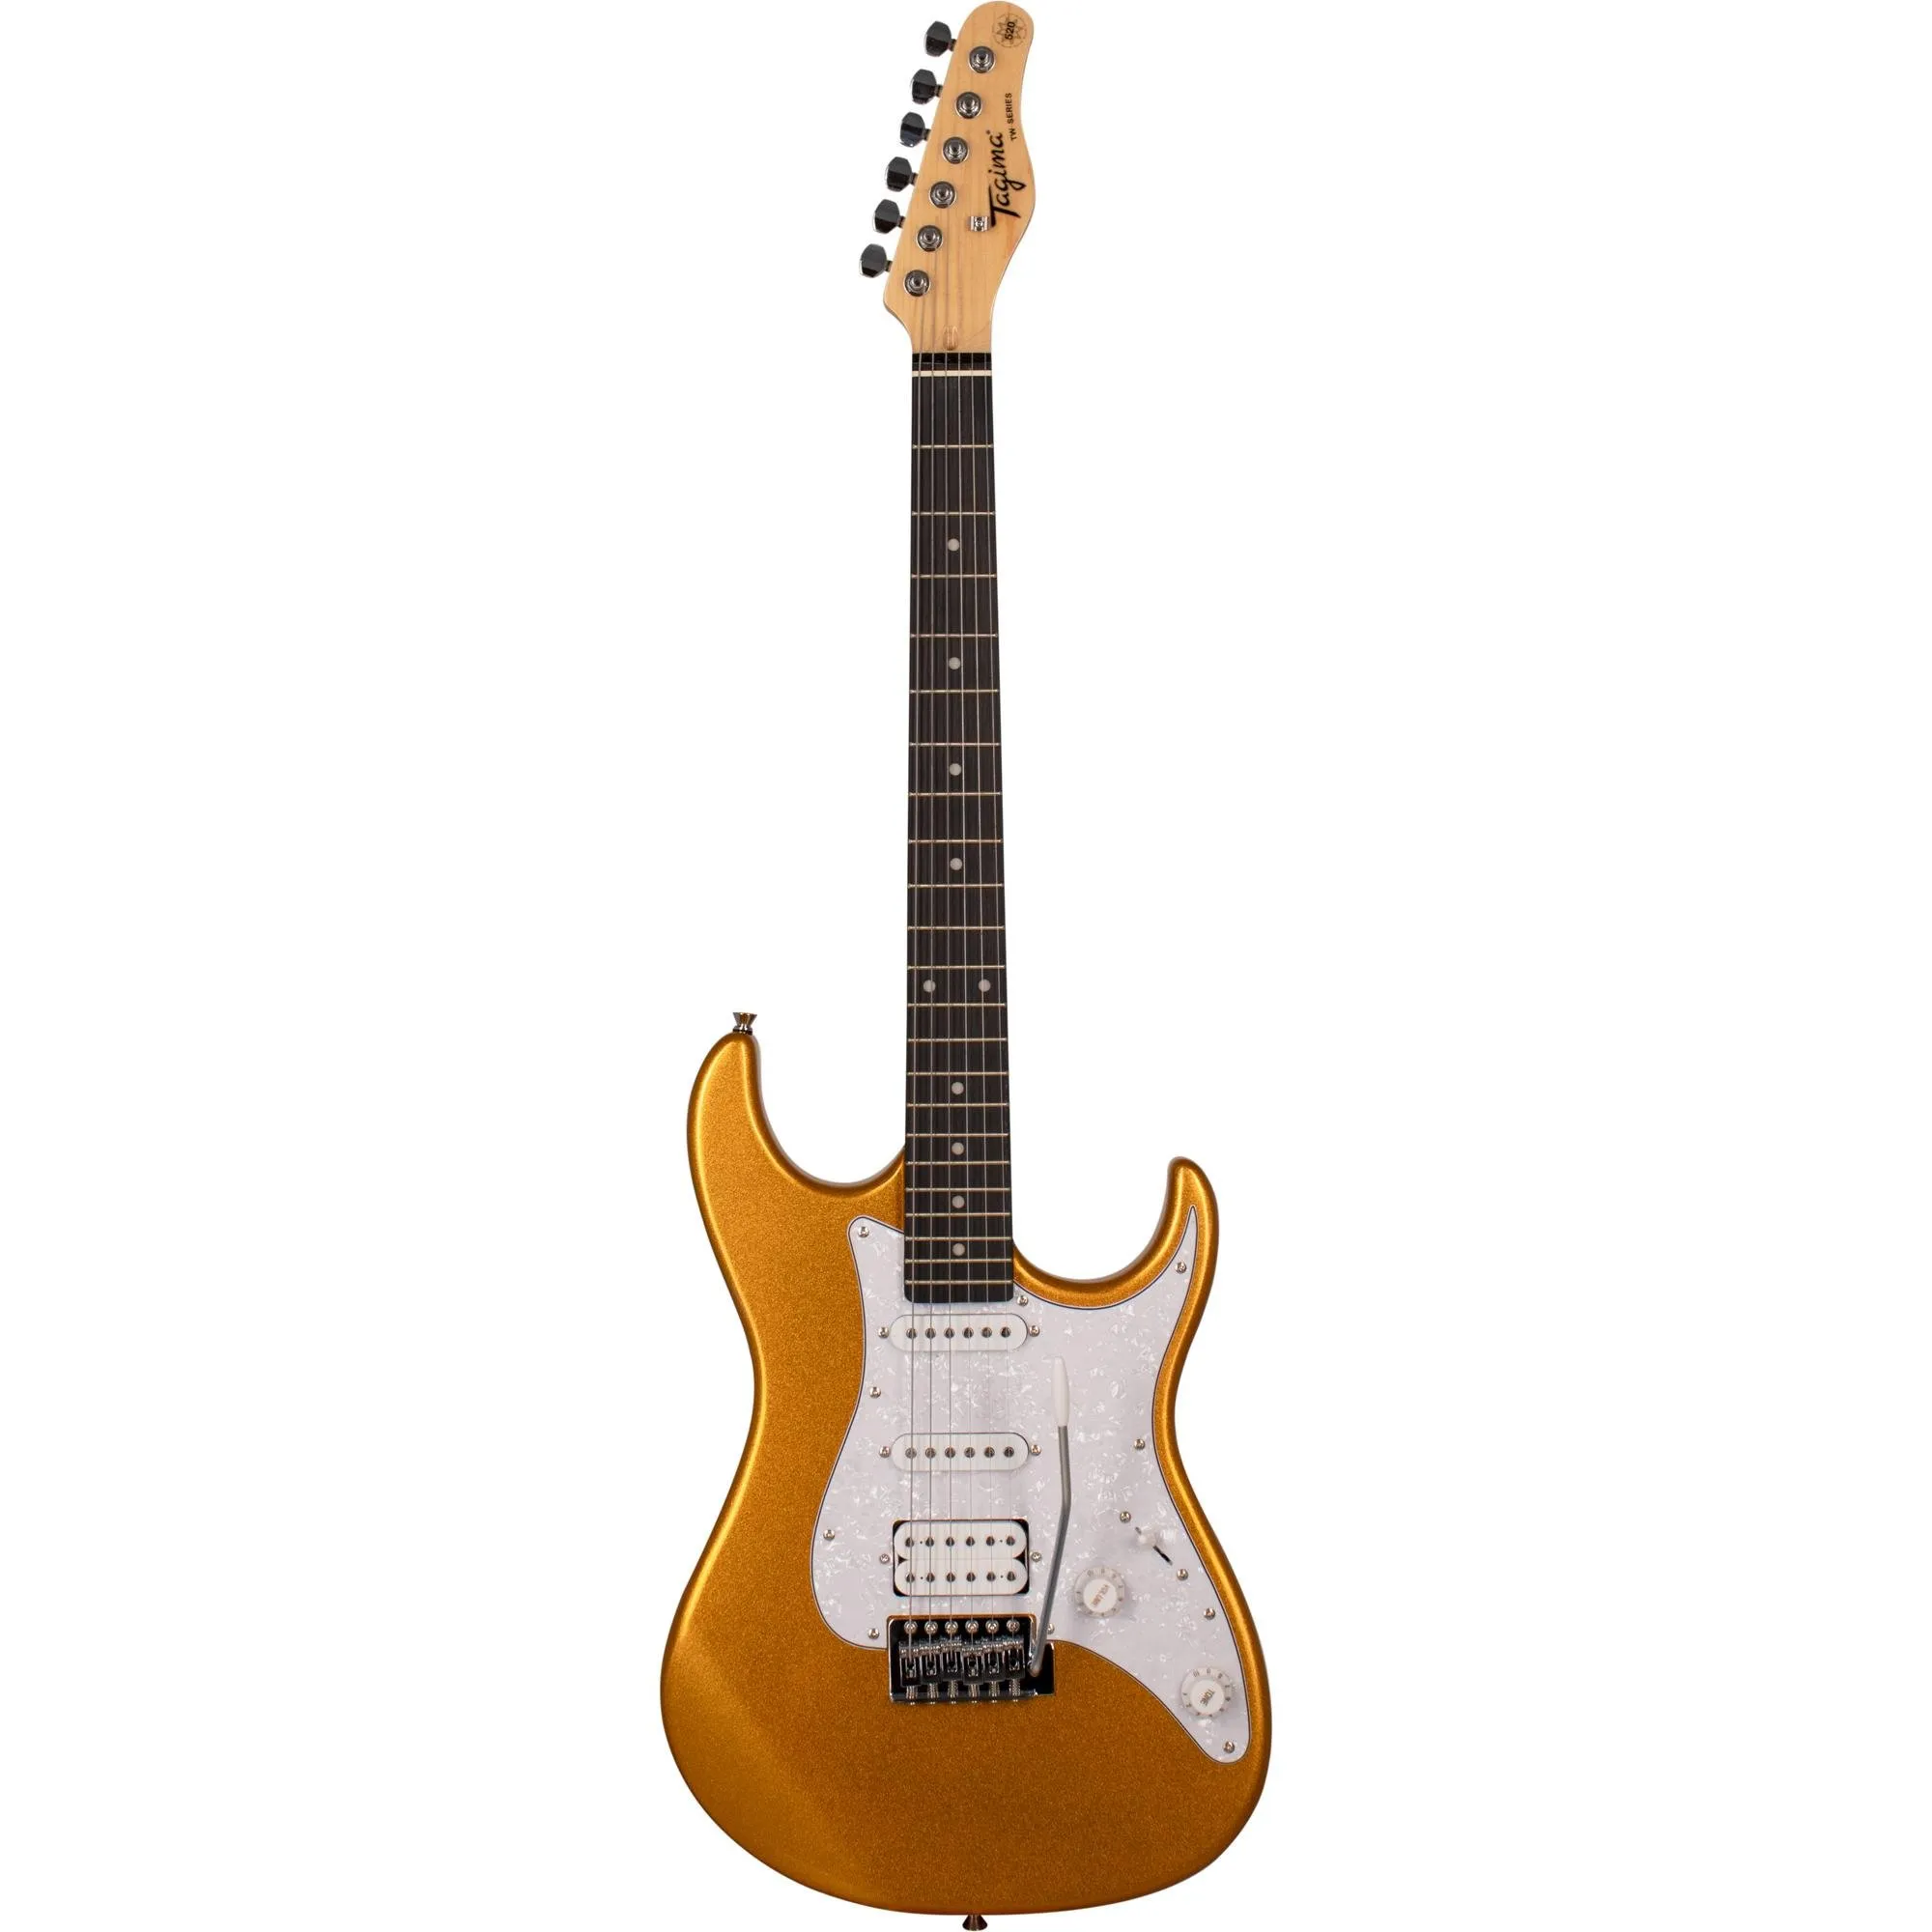 Guitarra Tagima TG-520 Metallic Gold Yellow por 945,99 à vista no boleto/pix ou parcele em até 10x sem juros. Compre na loja Mundomax!